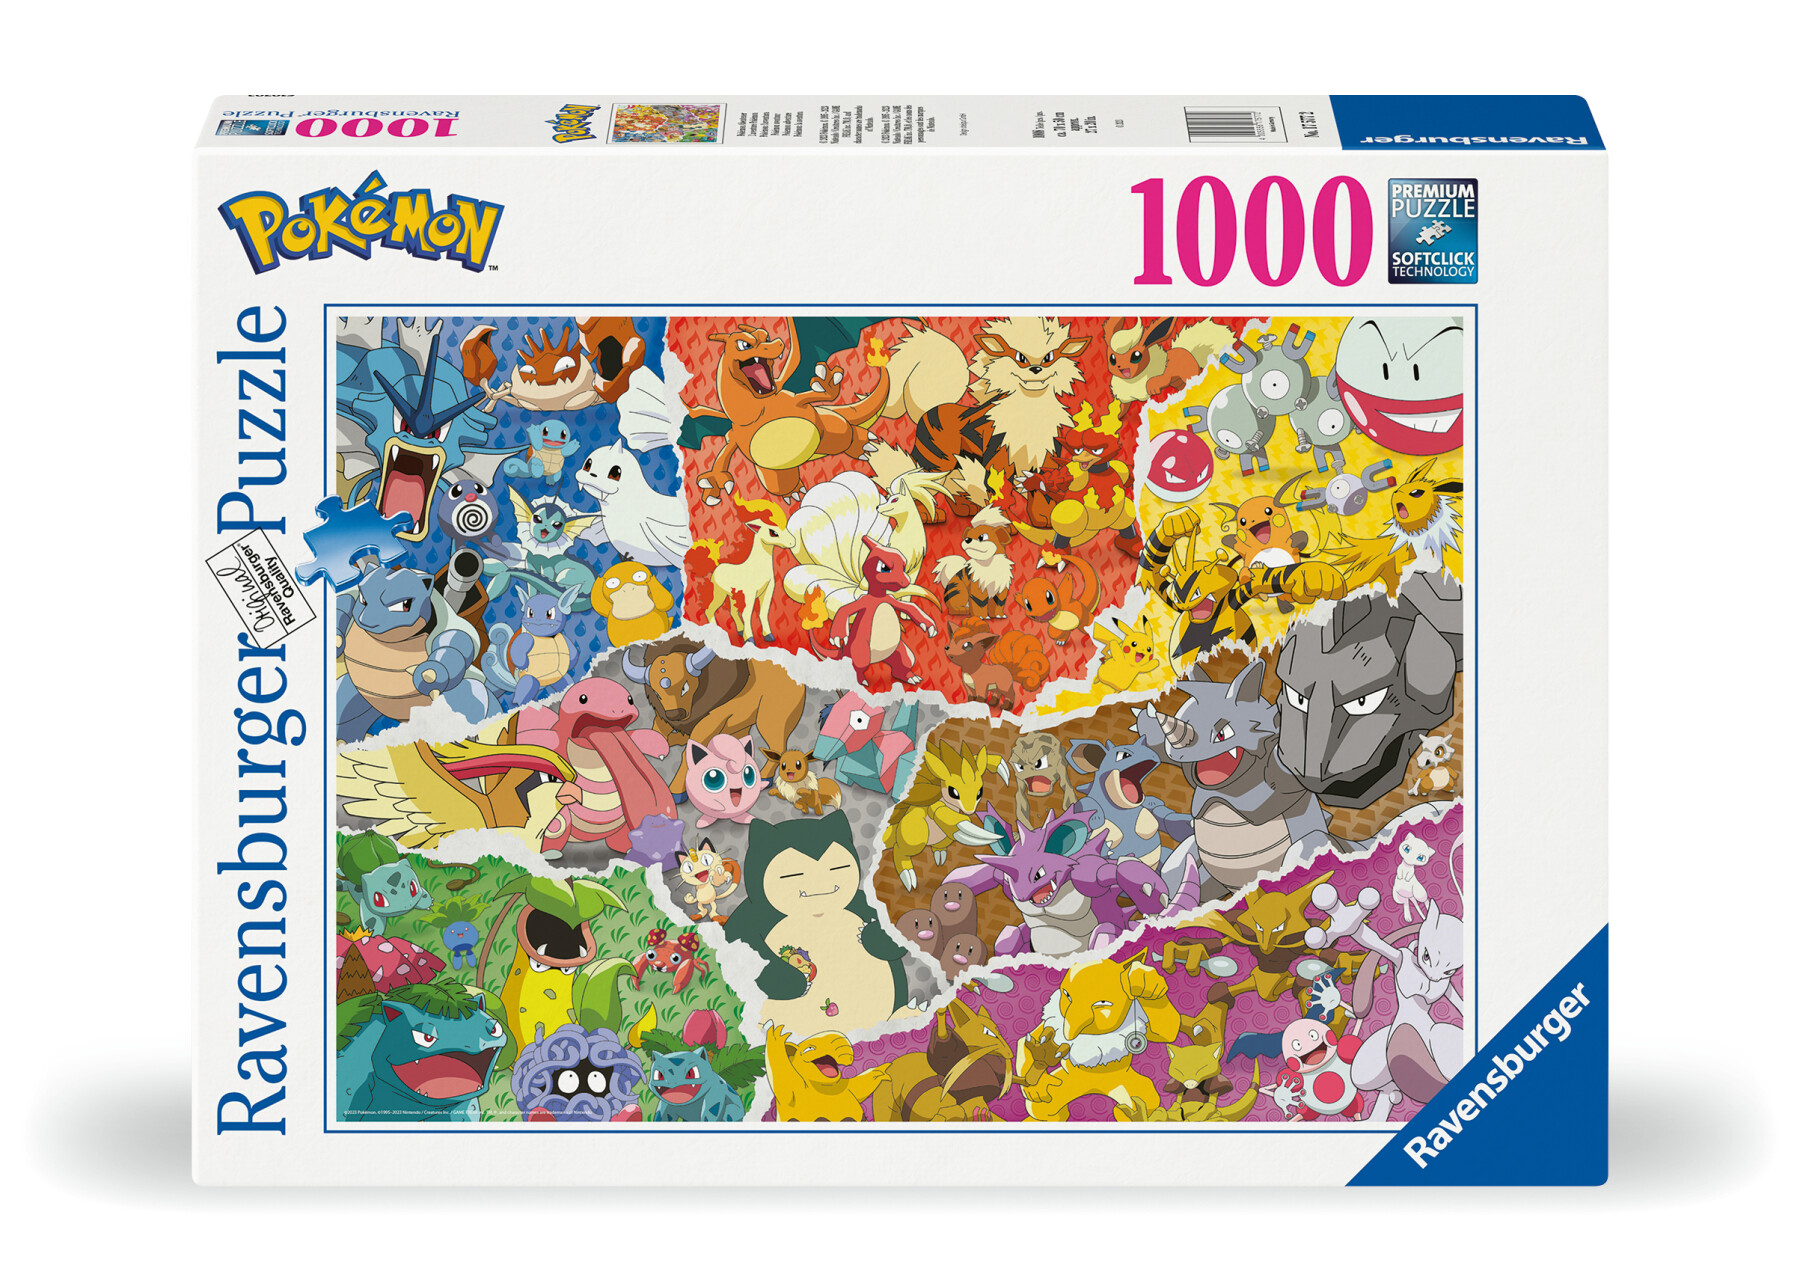 Ravensburger - puzzle pokémon, 1000 pezzi, puzzle adulti - POKEMON, RAVENSBURGER